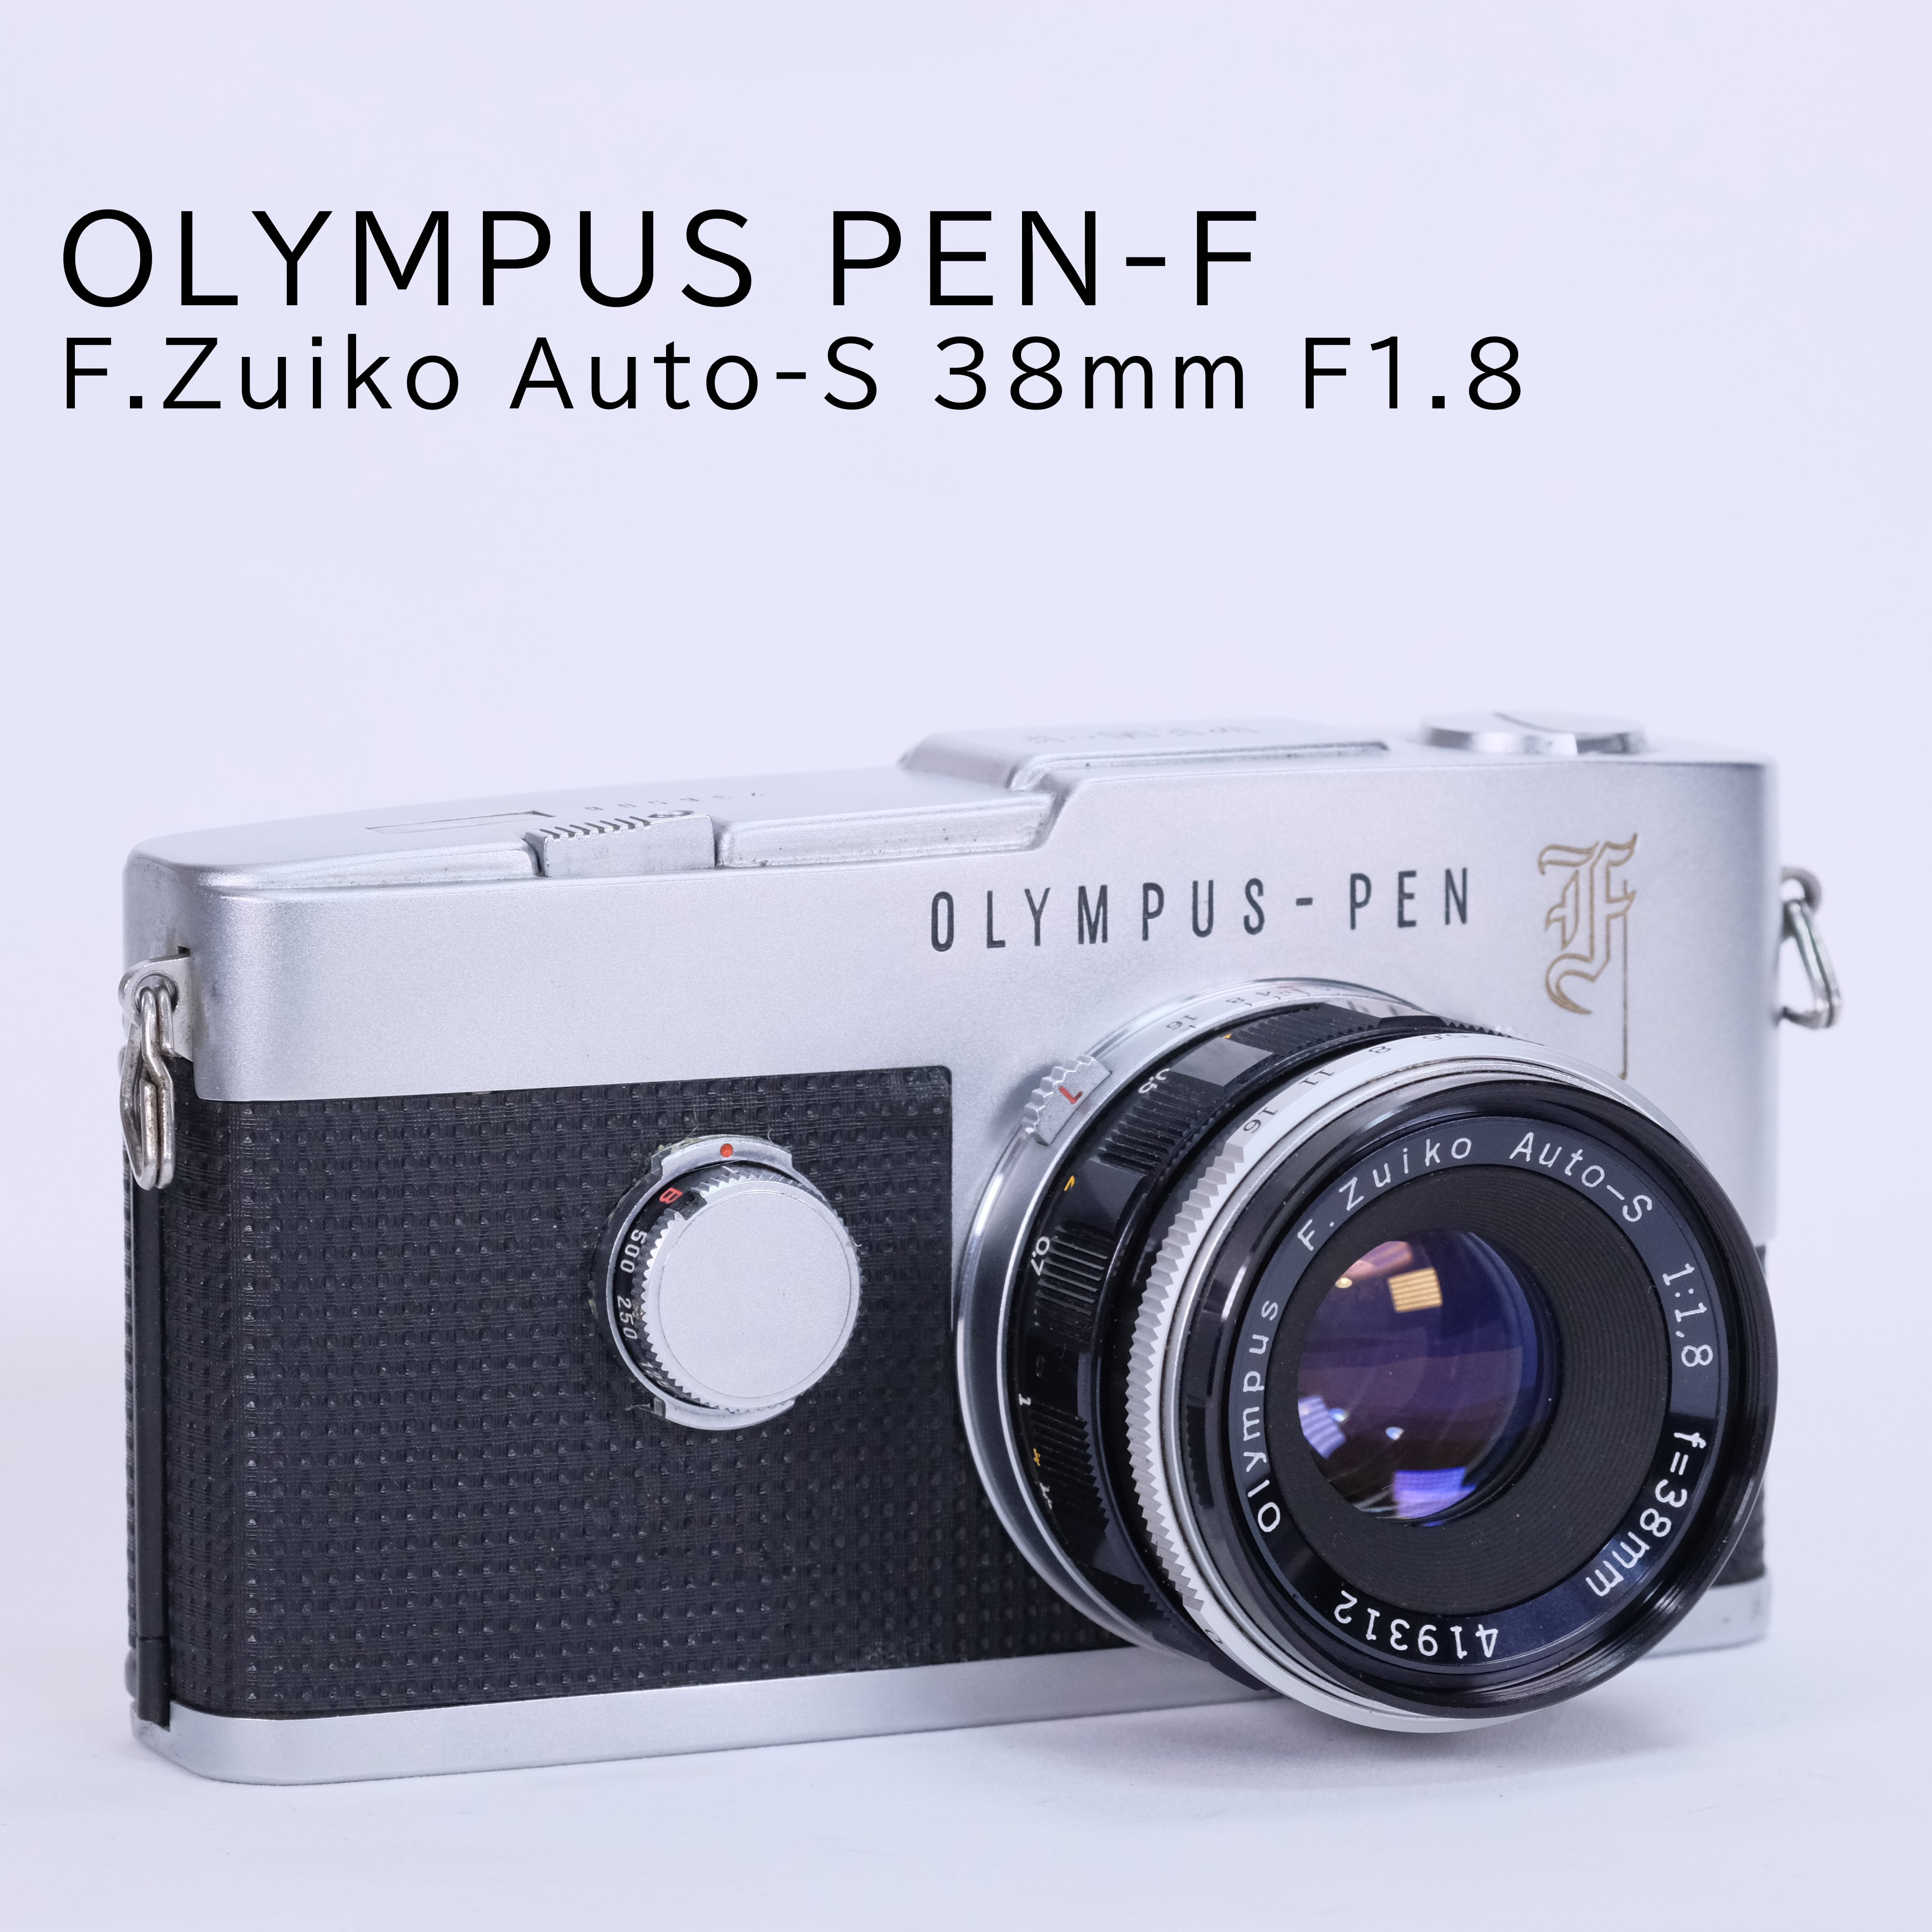 【修理\u0026試写済】OLYMPUS PEN F / ZUIKO 38mm F1.8